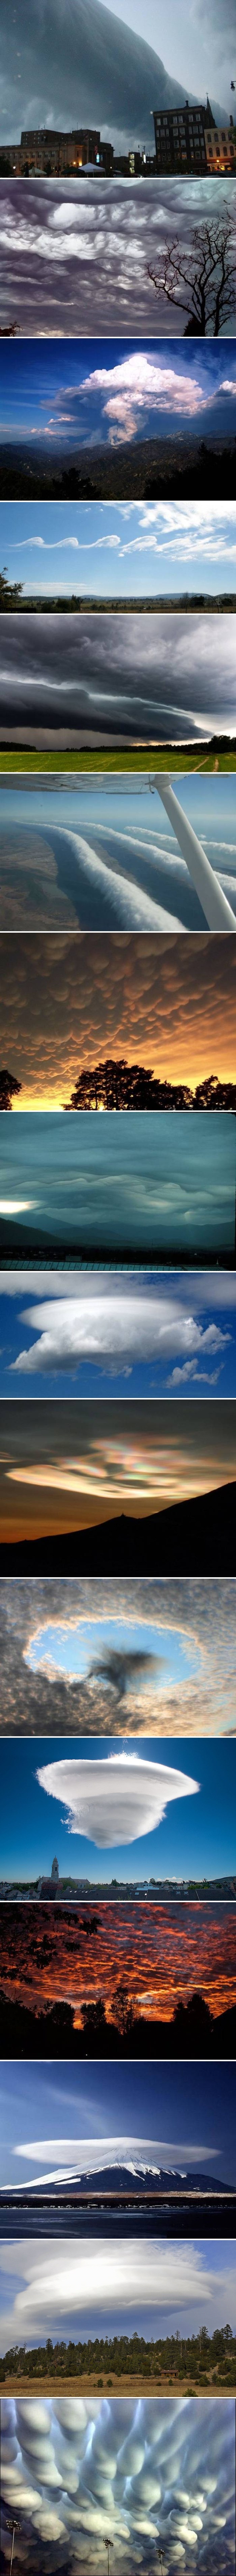 Spektakularne fotke oblaka koje su ovi ljudi podijelili izgledaju nestvarno, no nije riječ o montažama